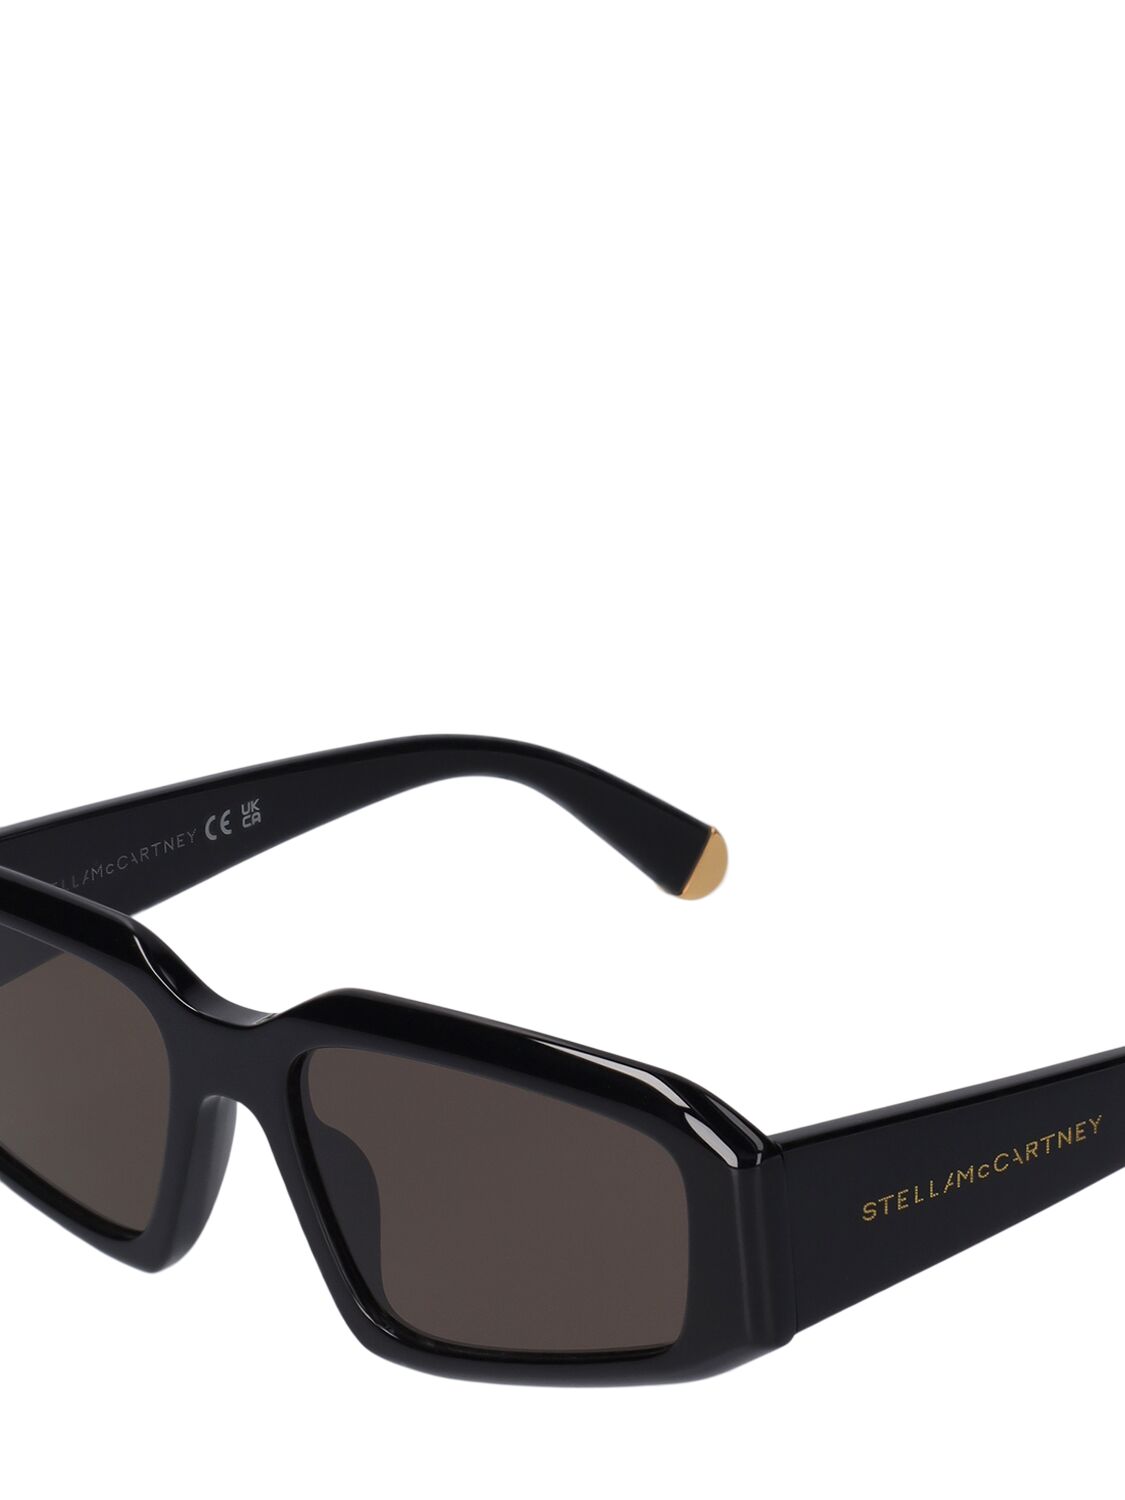 Shop Stella Mccartney Squared Acetate Sunglasses In Black,brown